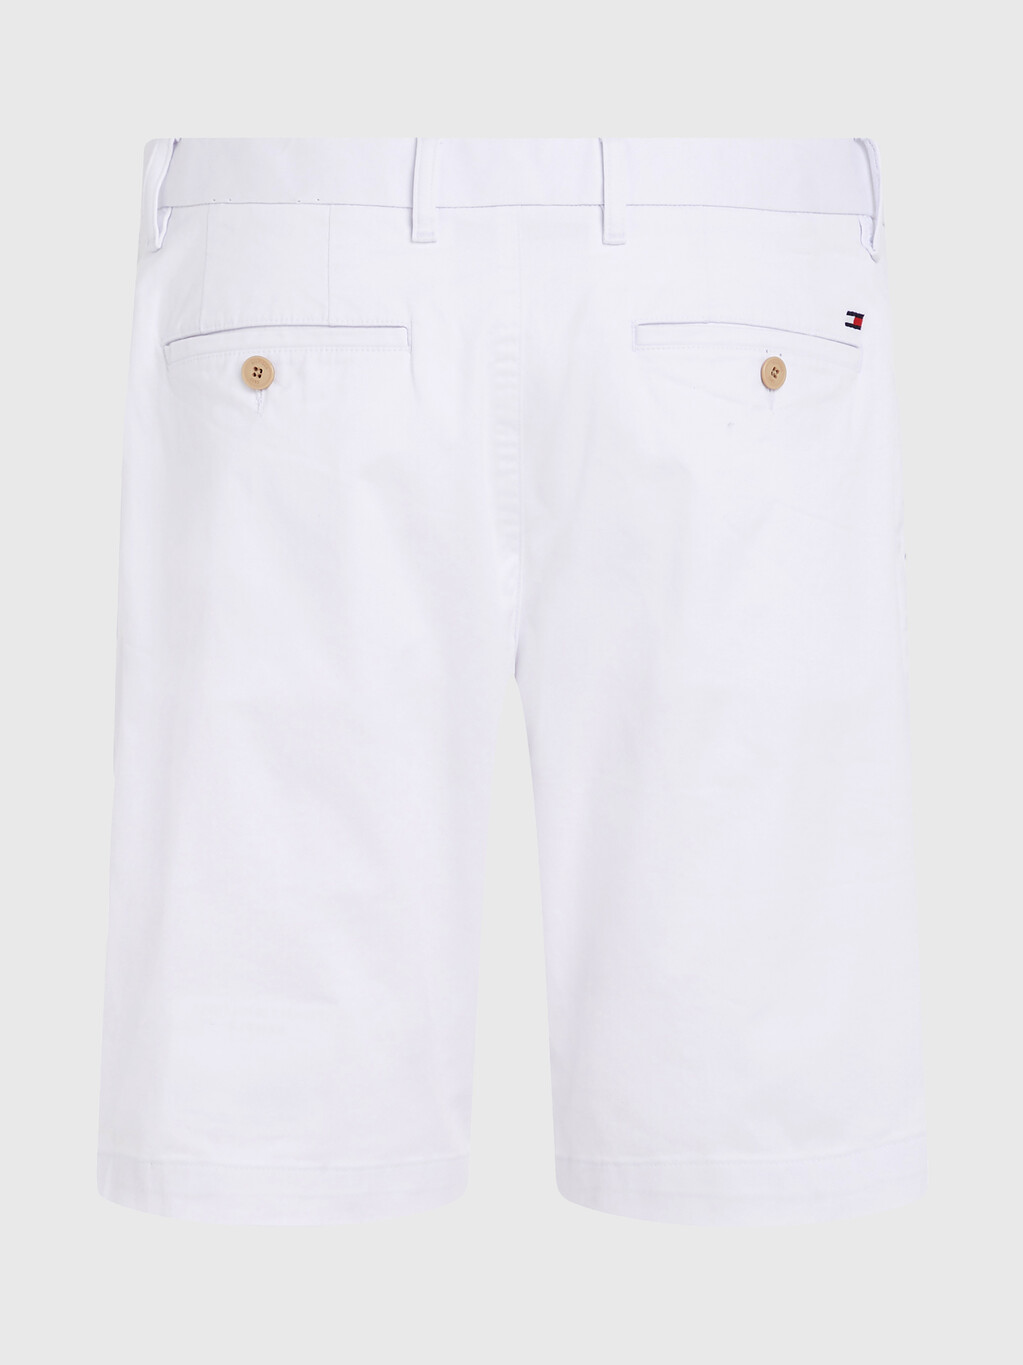 1985系列harlem 短褲, White, hi-res